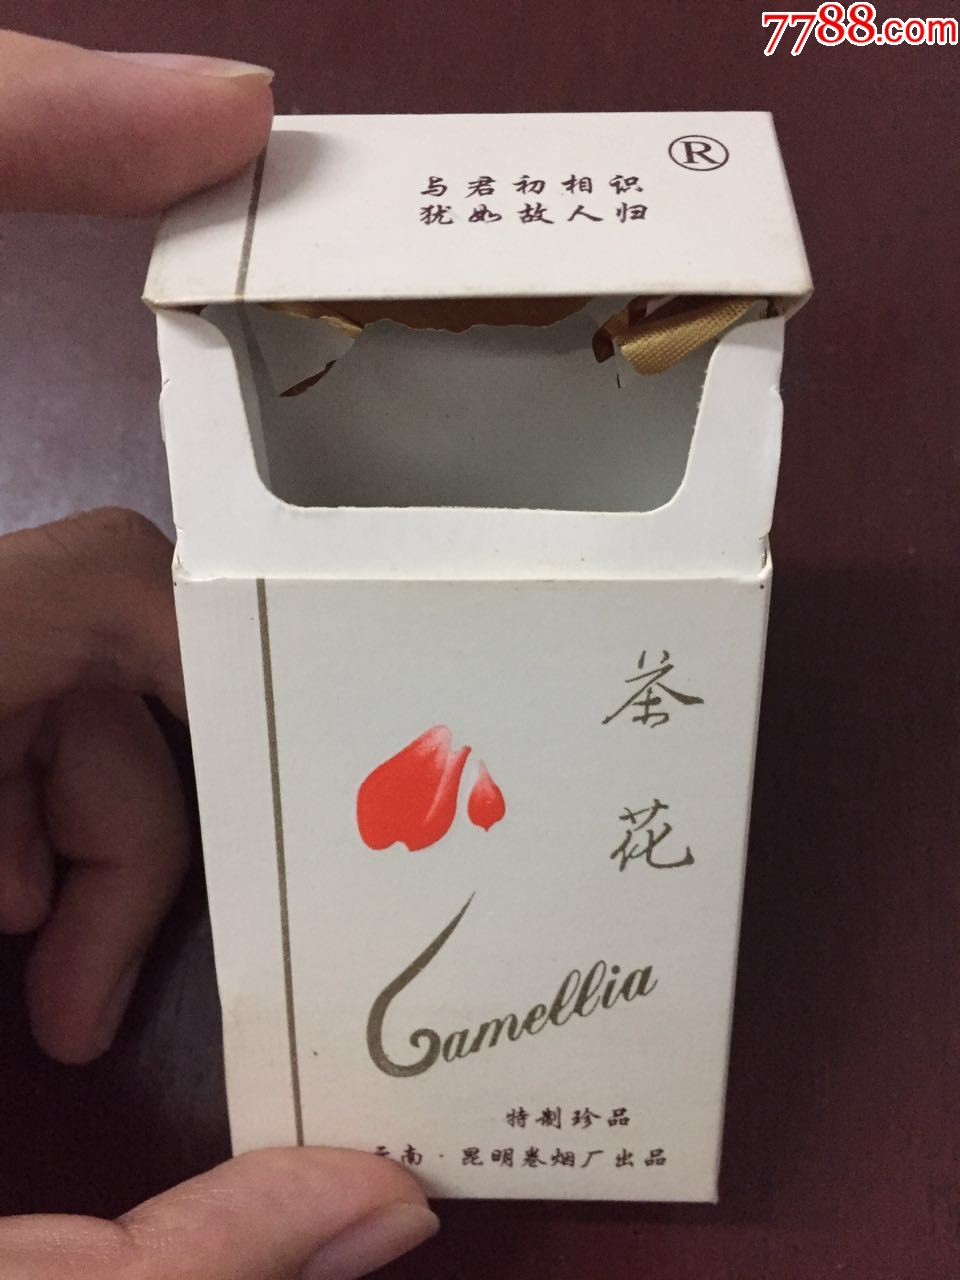 3d烟盒·茶花(与君初相识,犹如故人归)·云南昆明烟卷